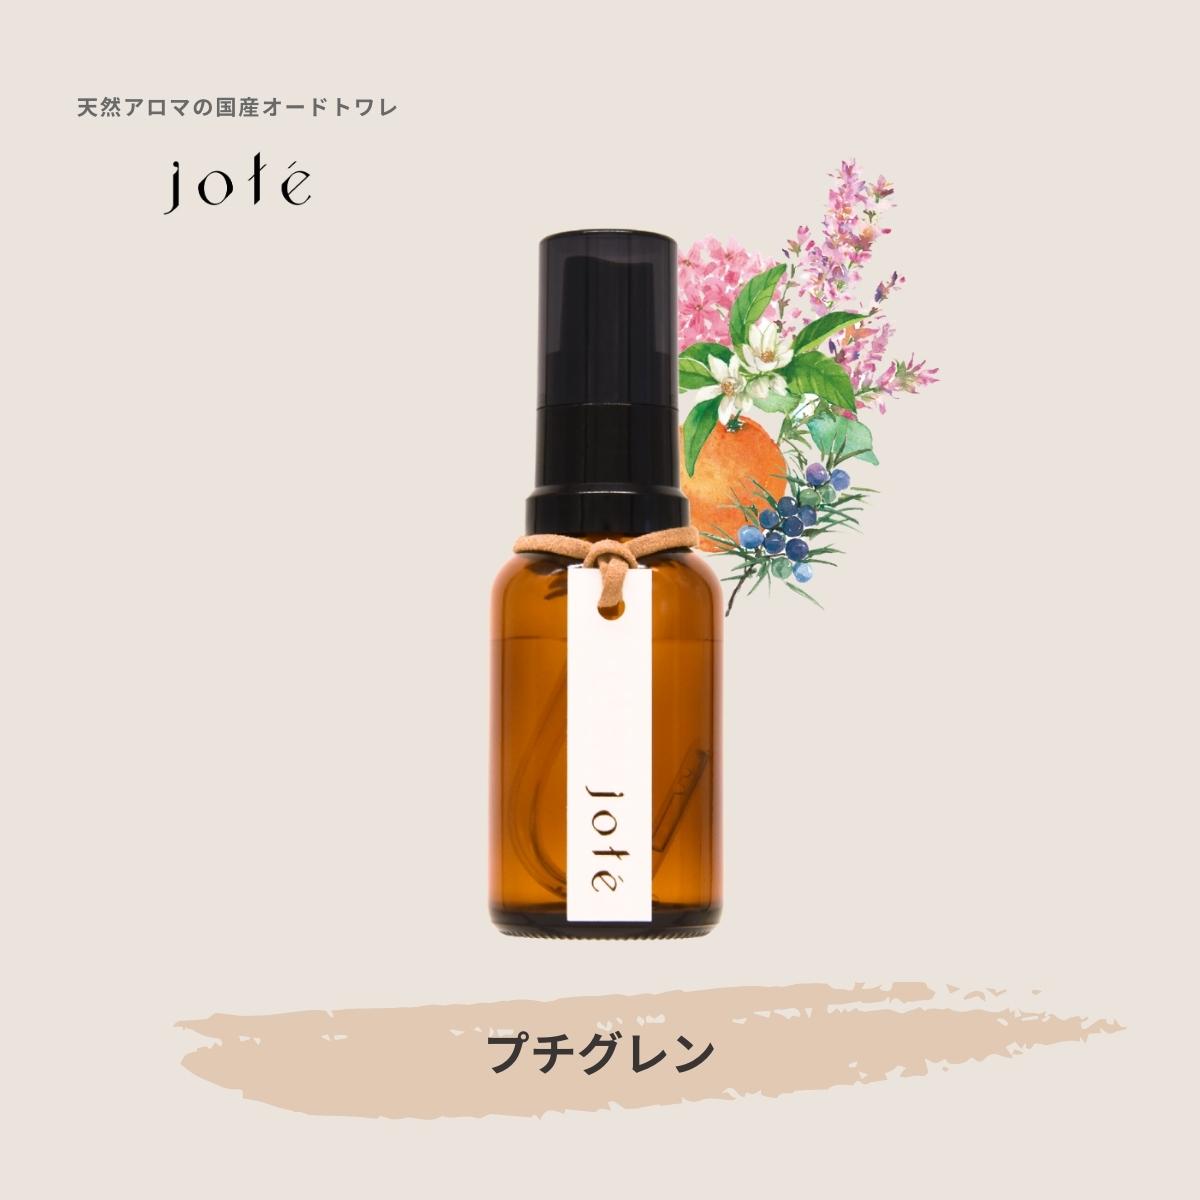 jote ♭3（フラット３）Perfume 30ml《プチグレンの香り》オードトワレ